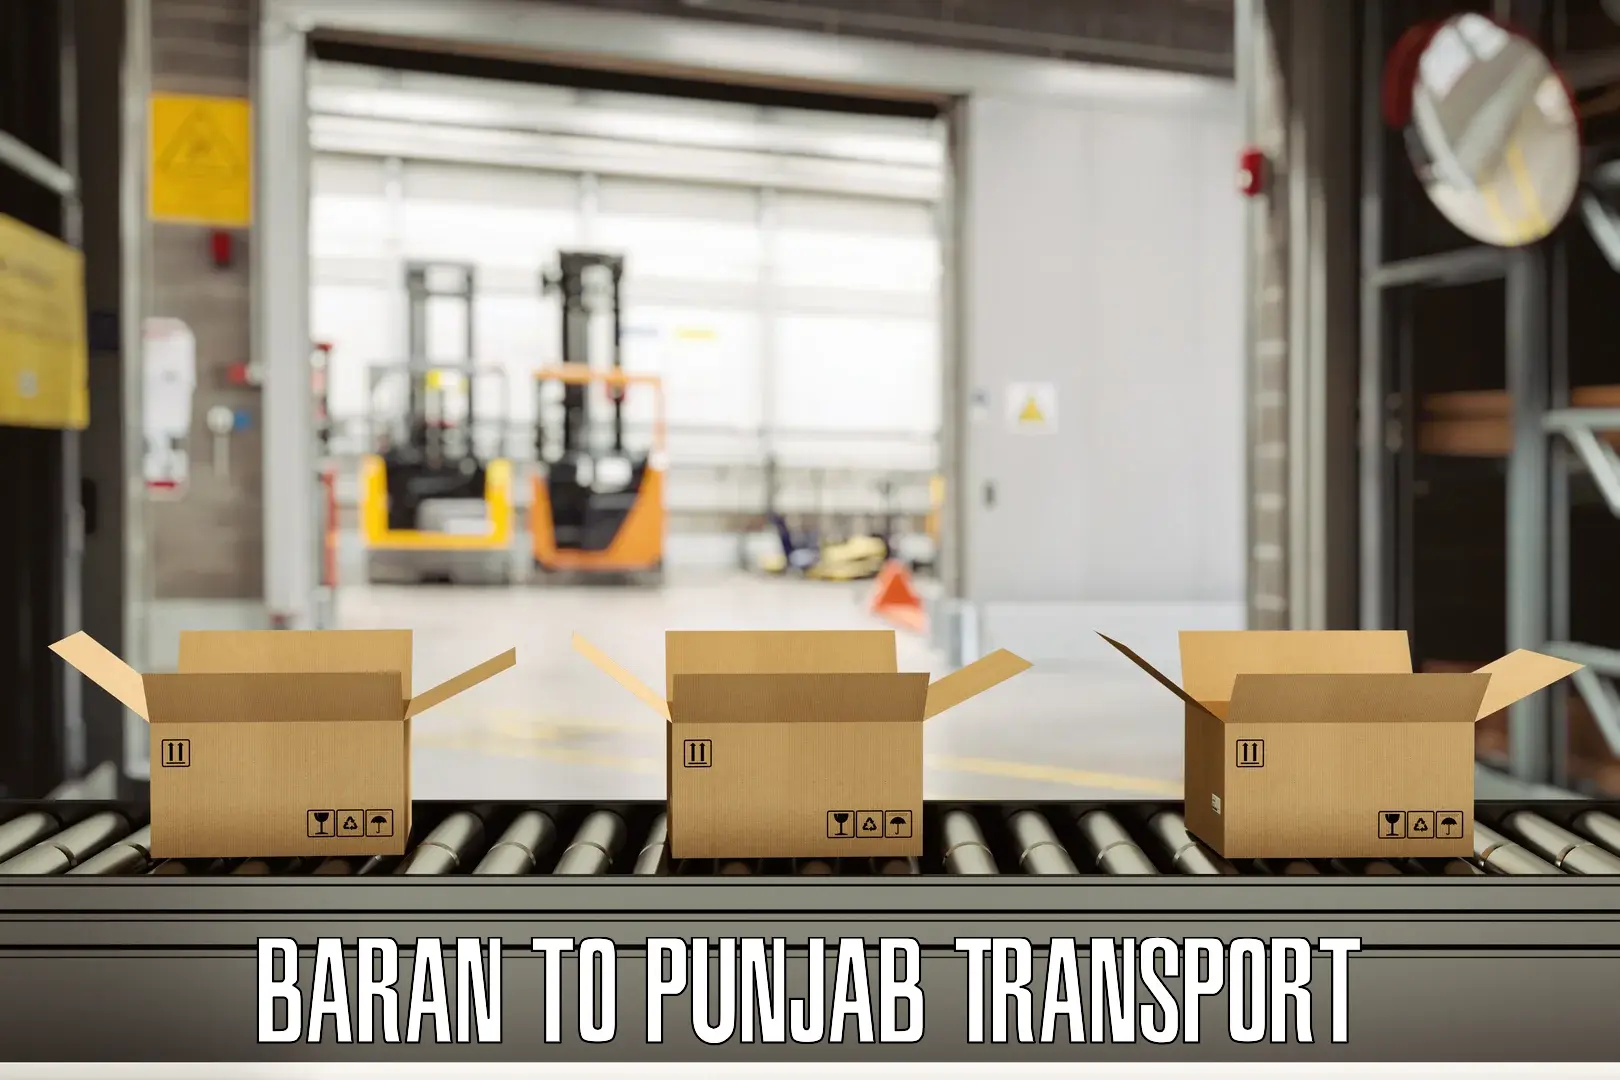 Pick up transport service Baran to Punjab